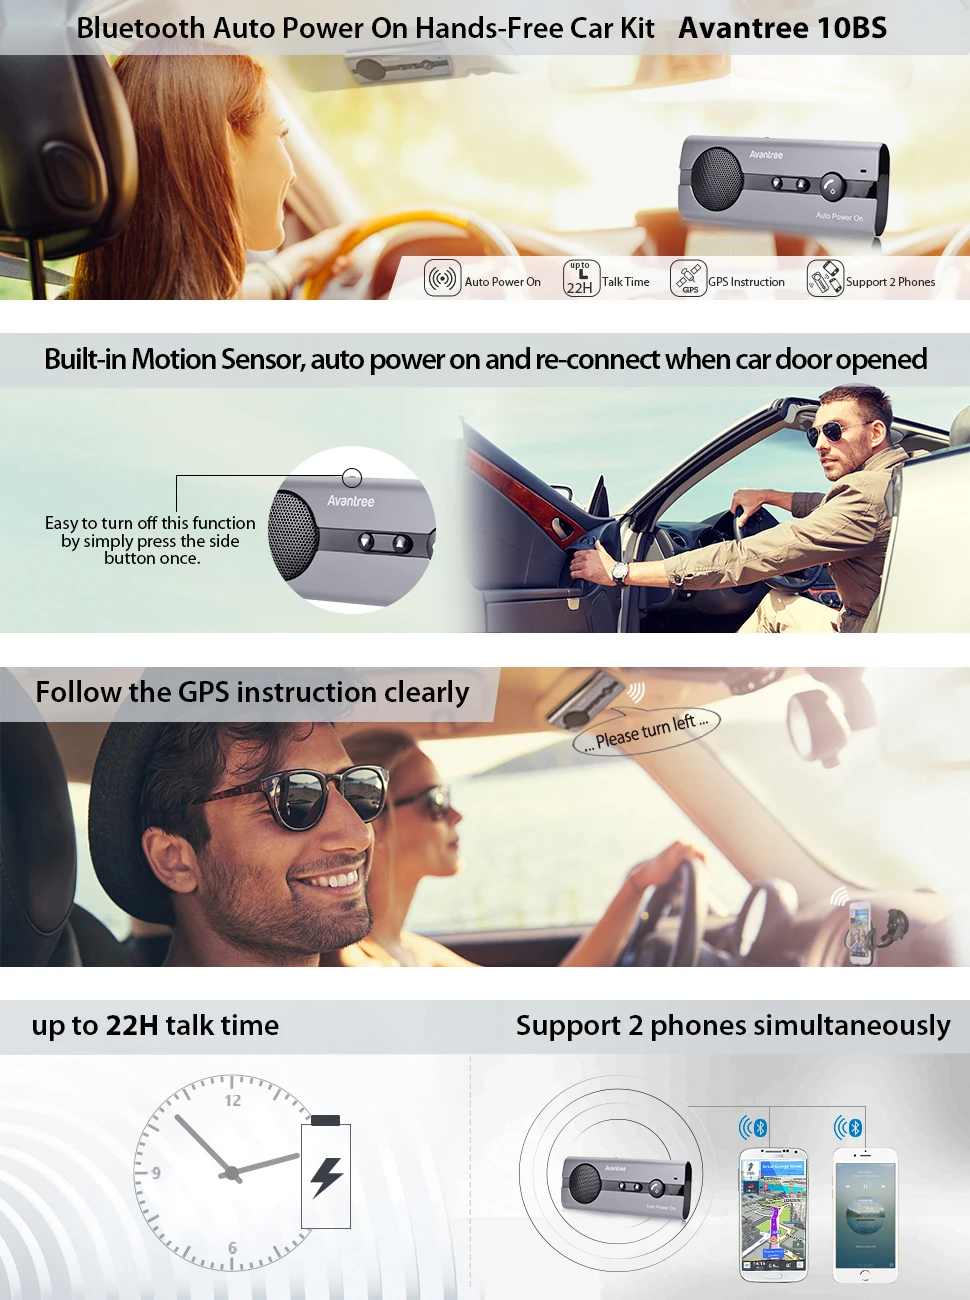 Avantree Bluetooth автомобильный комплект Авто мощность на козырек с датчиком движения, поддержка gps, музыка, громкая связь для мобильных телефонов